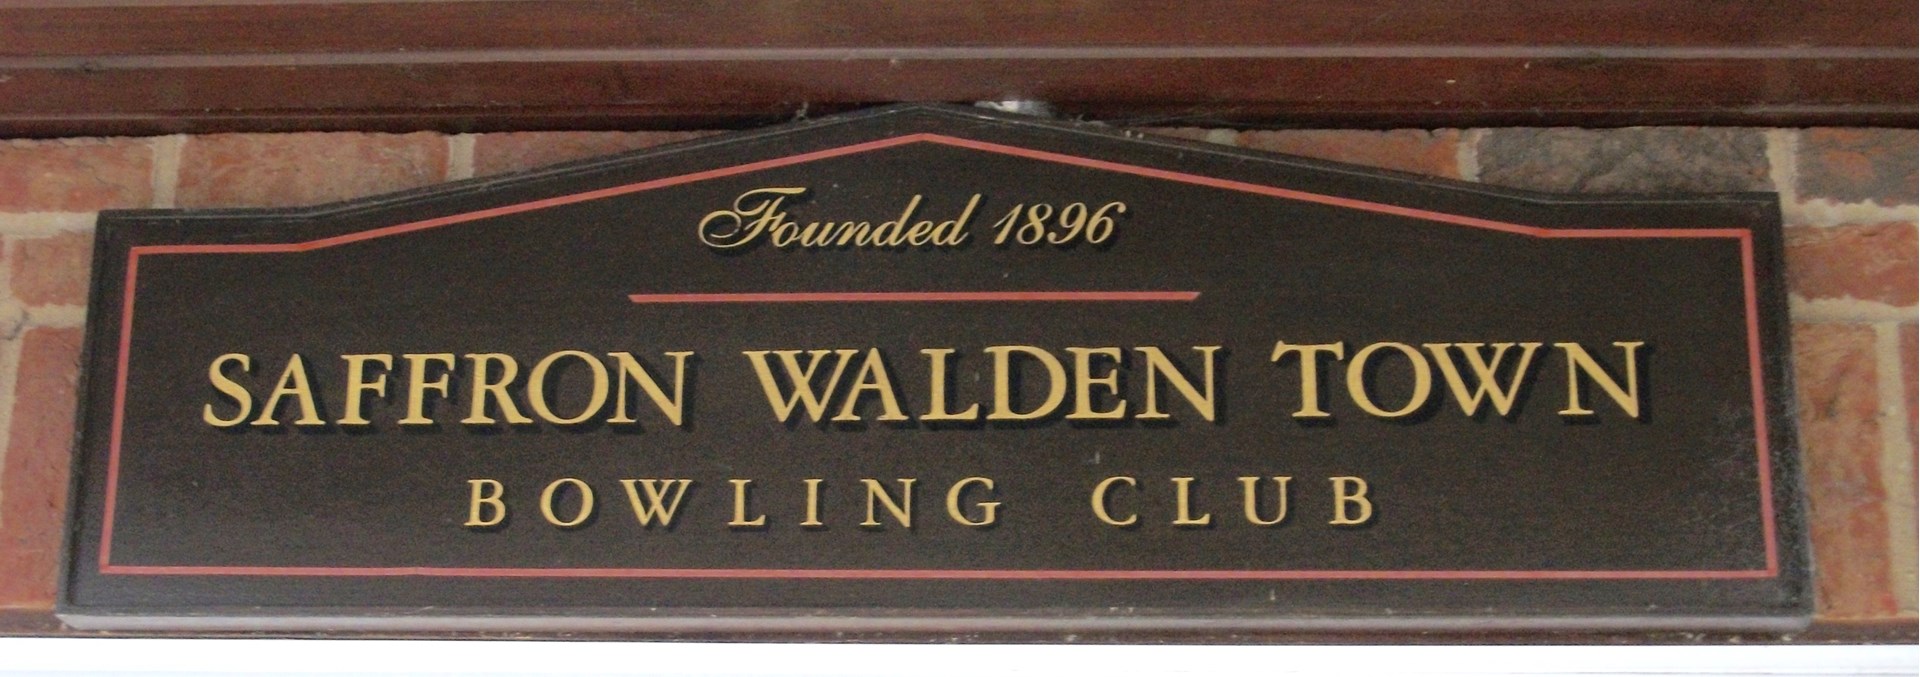 Saffron Walden Town Bowls Club About Us